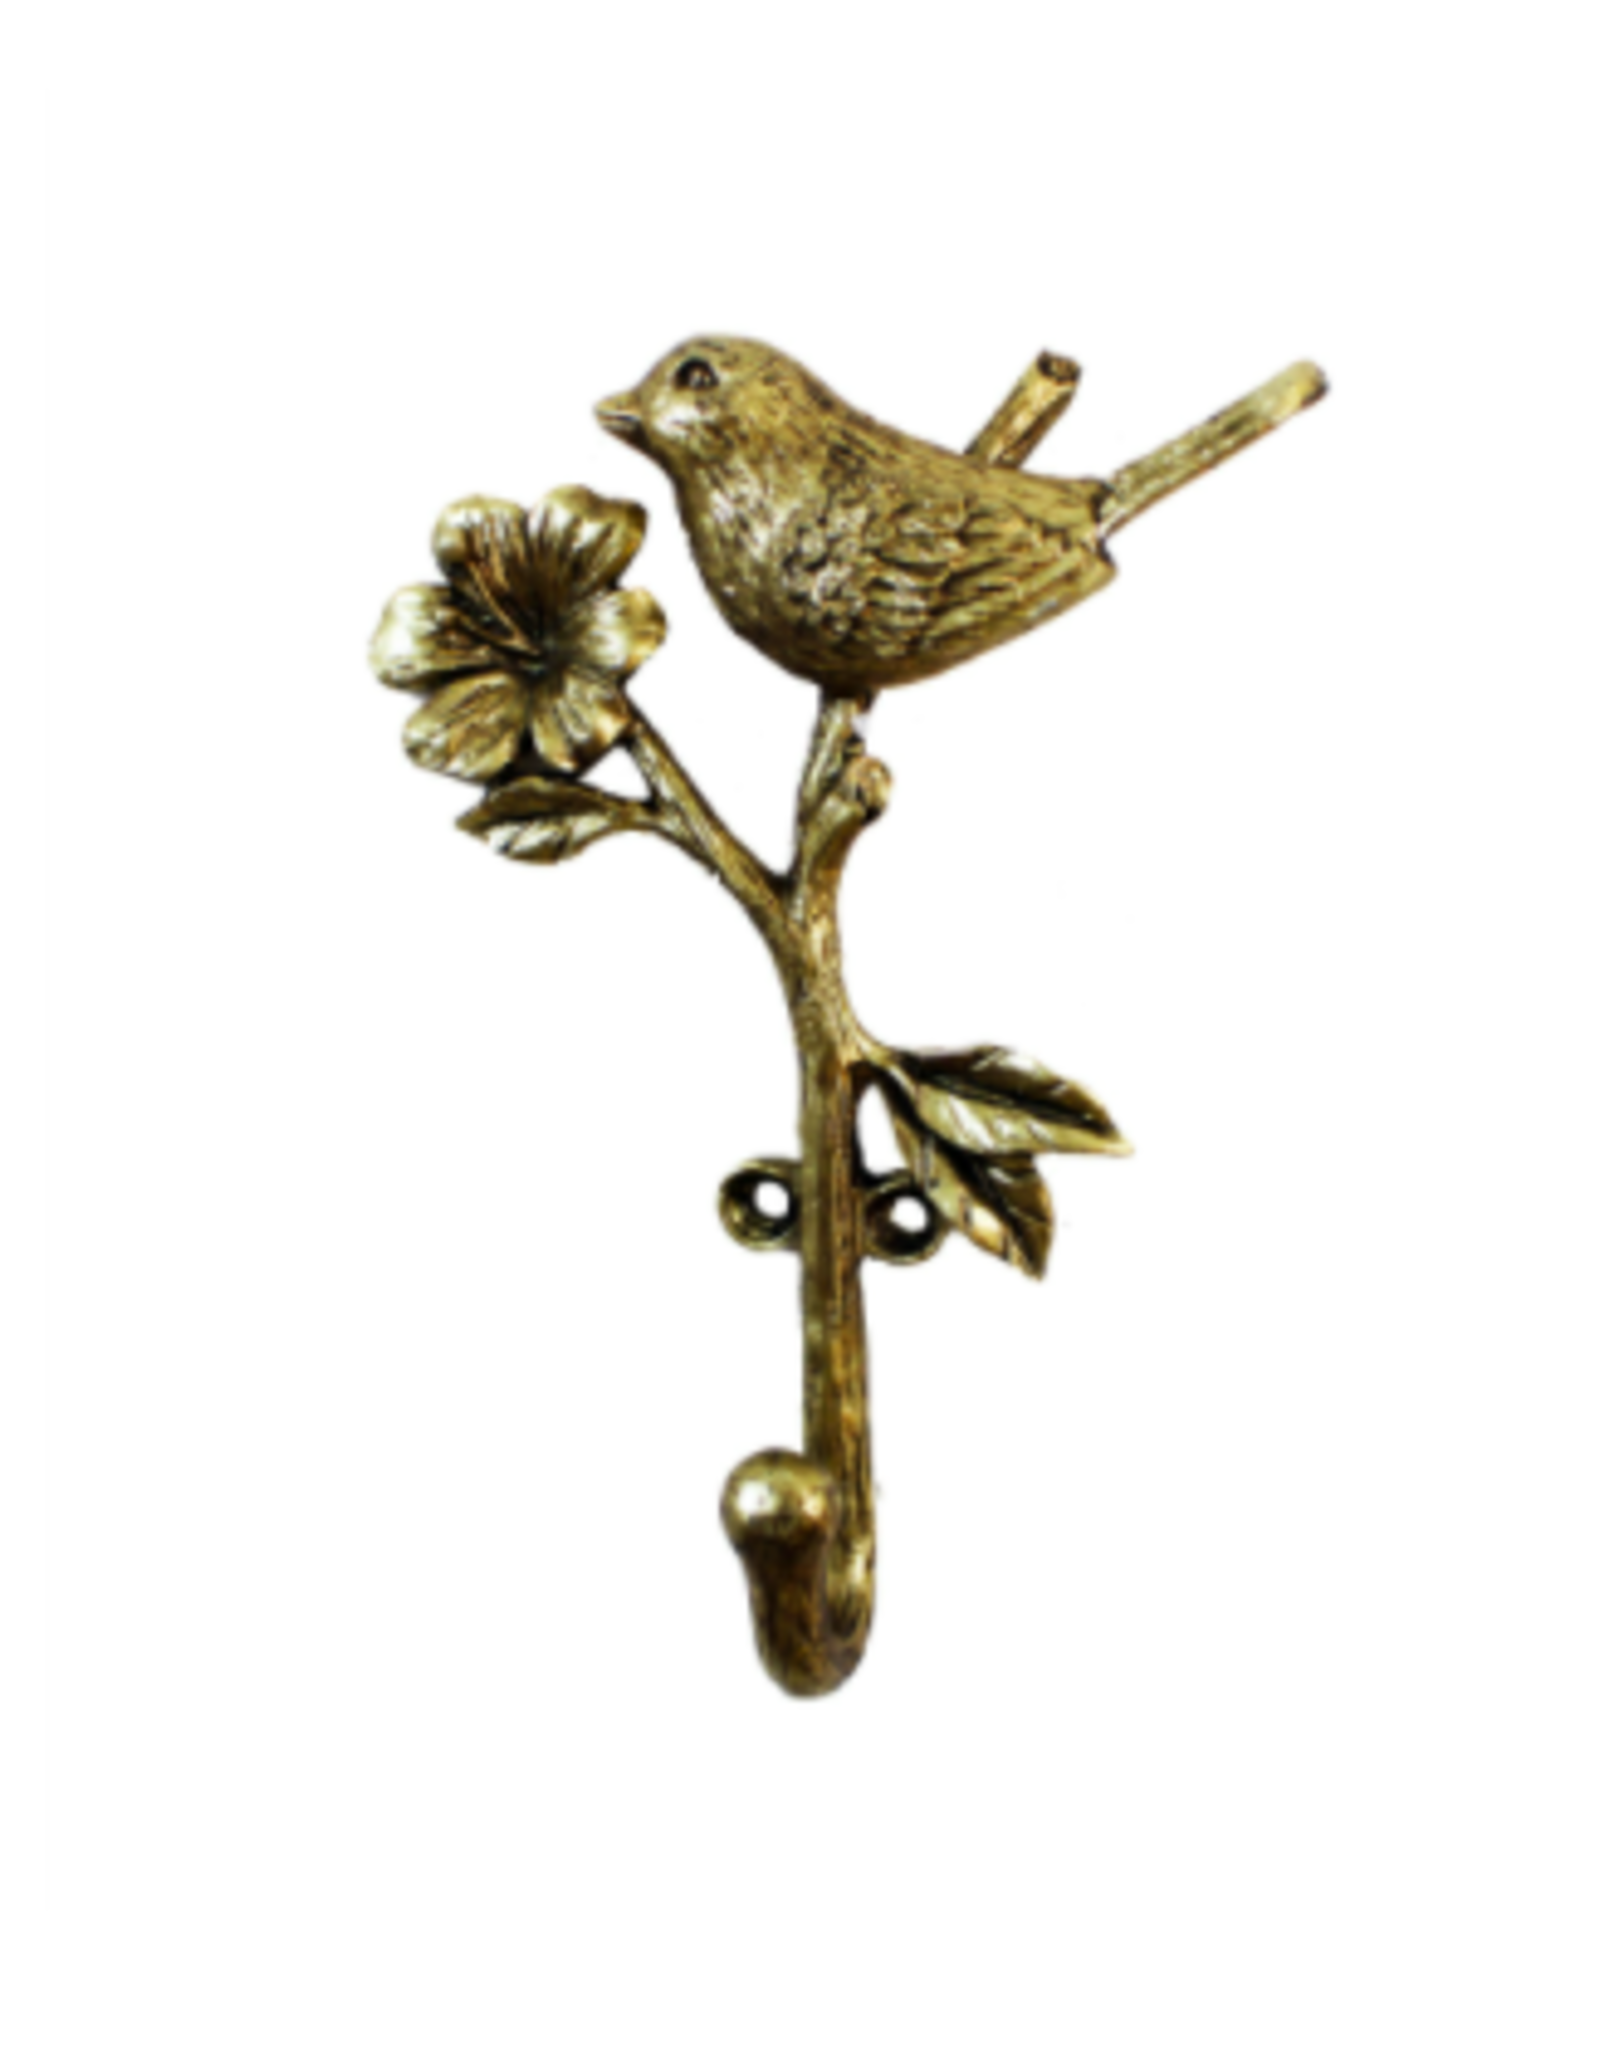 SSH - Single Wall Hook / Bird & Flower, Gold, 6"